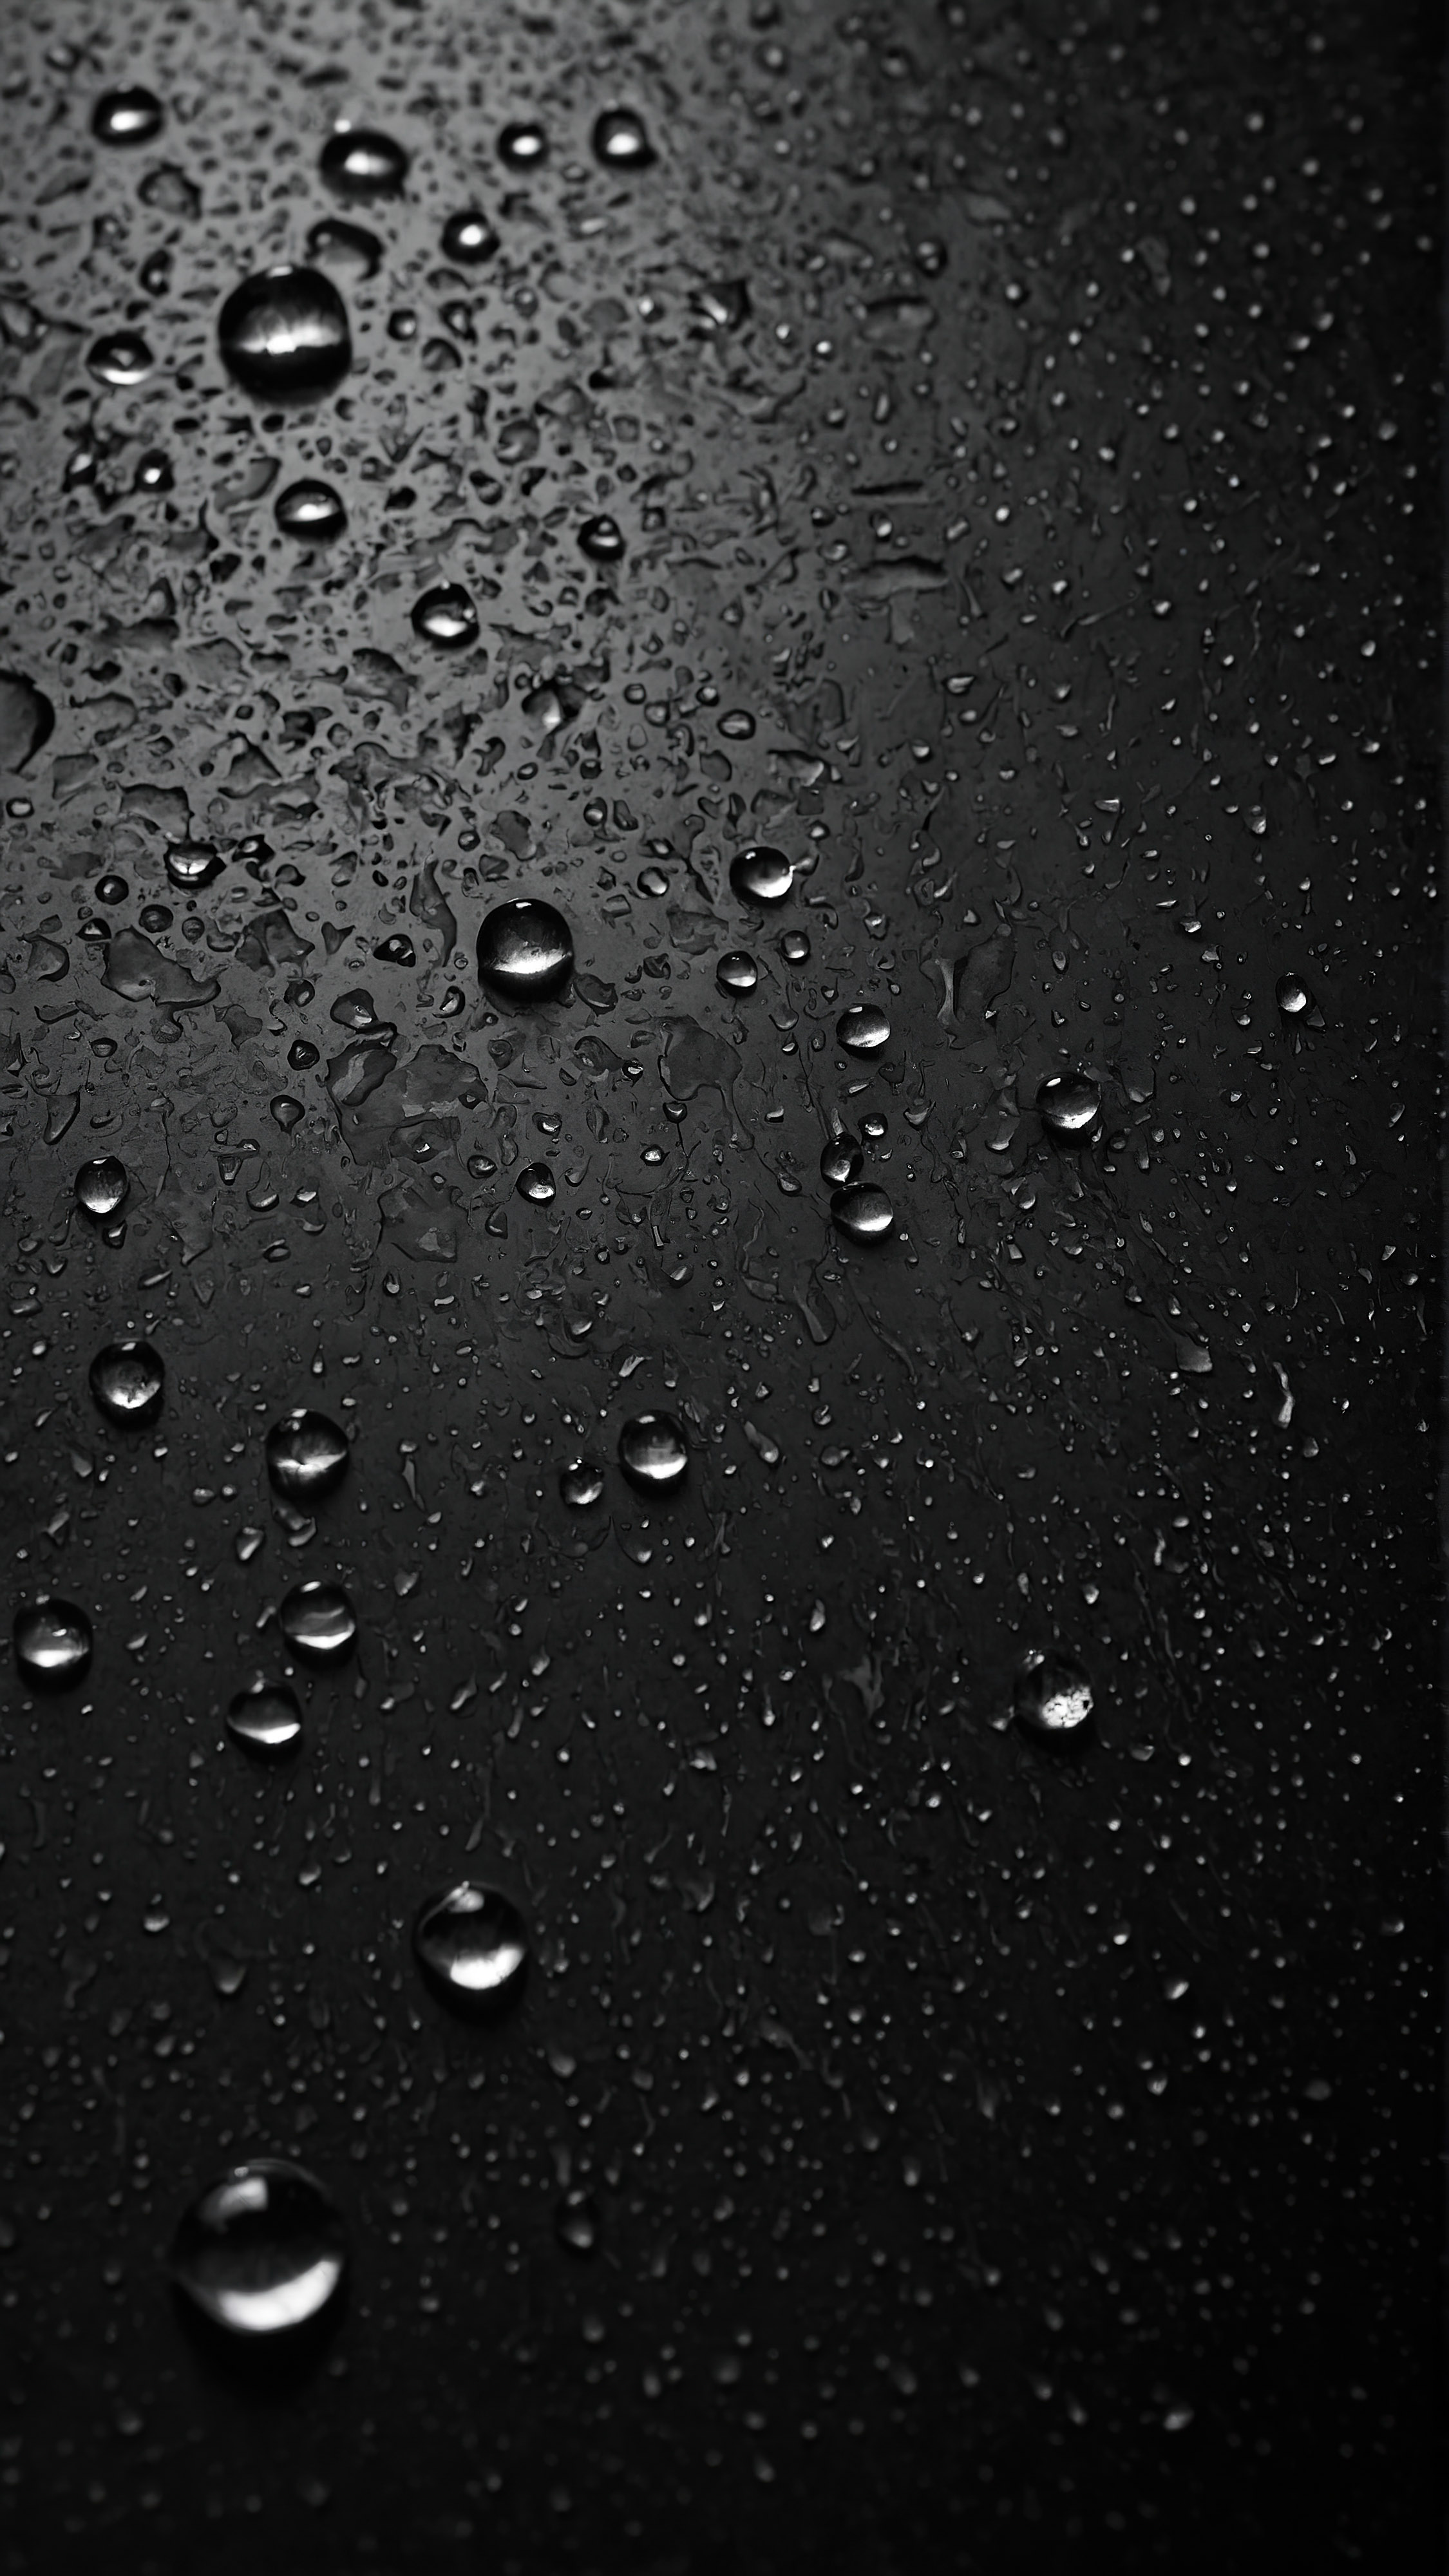 Ressentez la texture des gouttes d'eau sur une surface sombre, capturée dans notre fond d'écran noir pour iPhone.